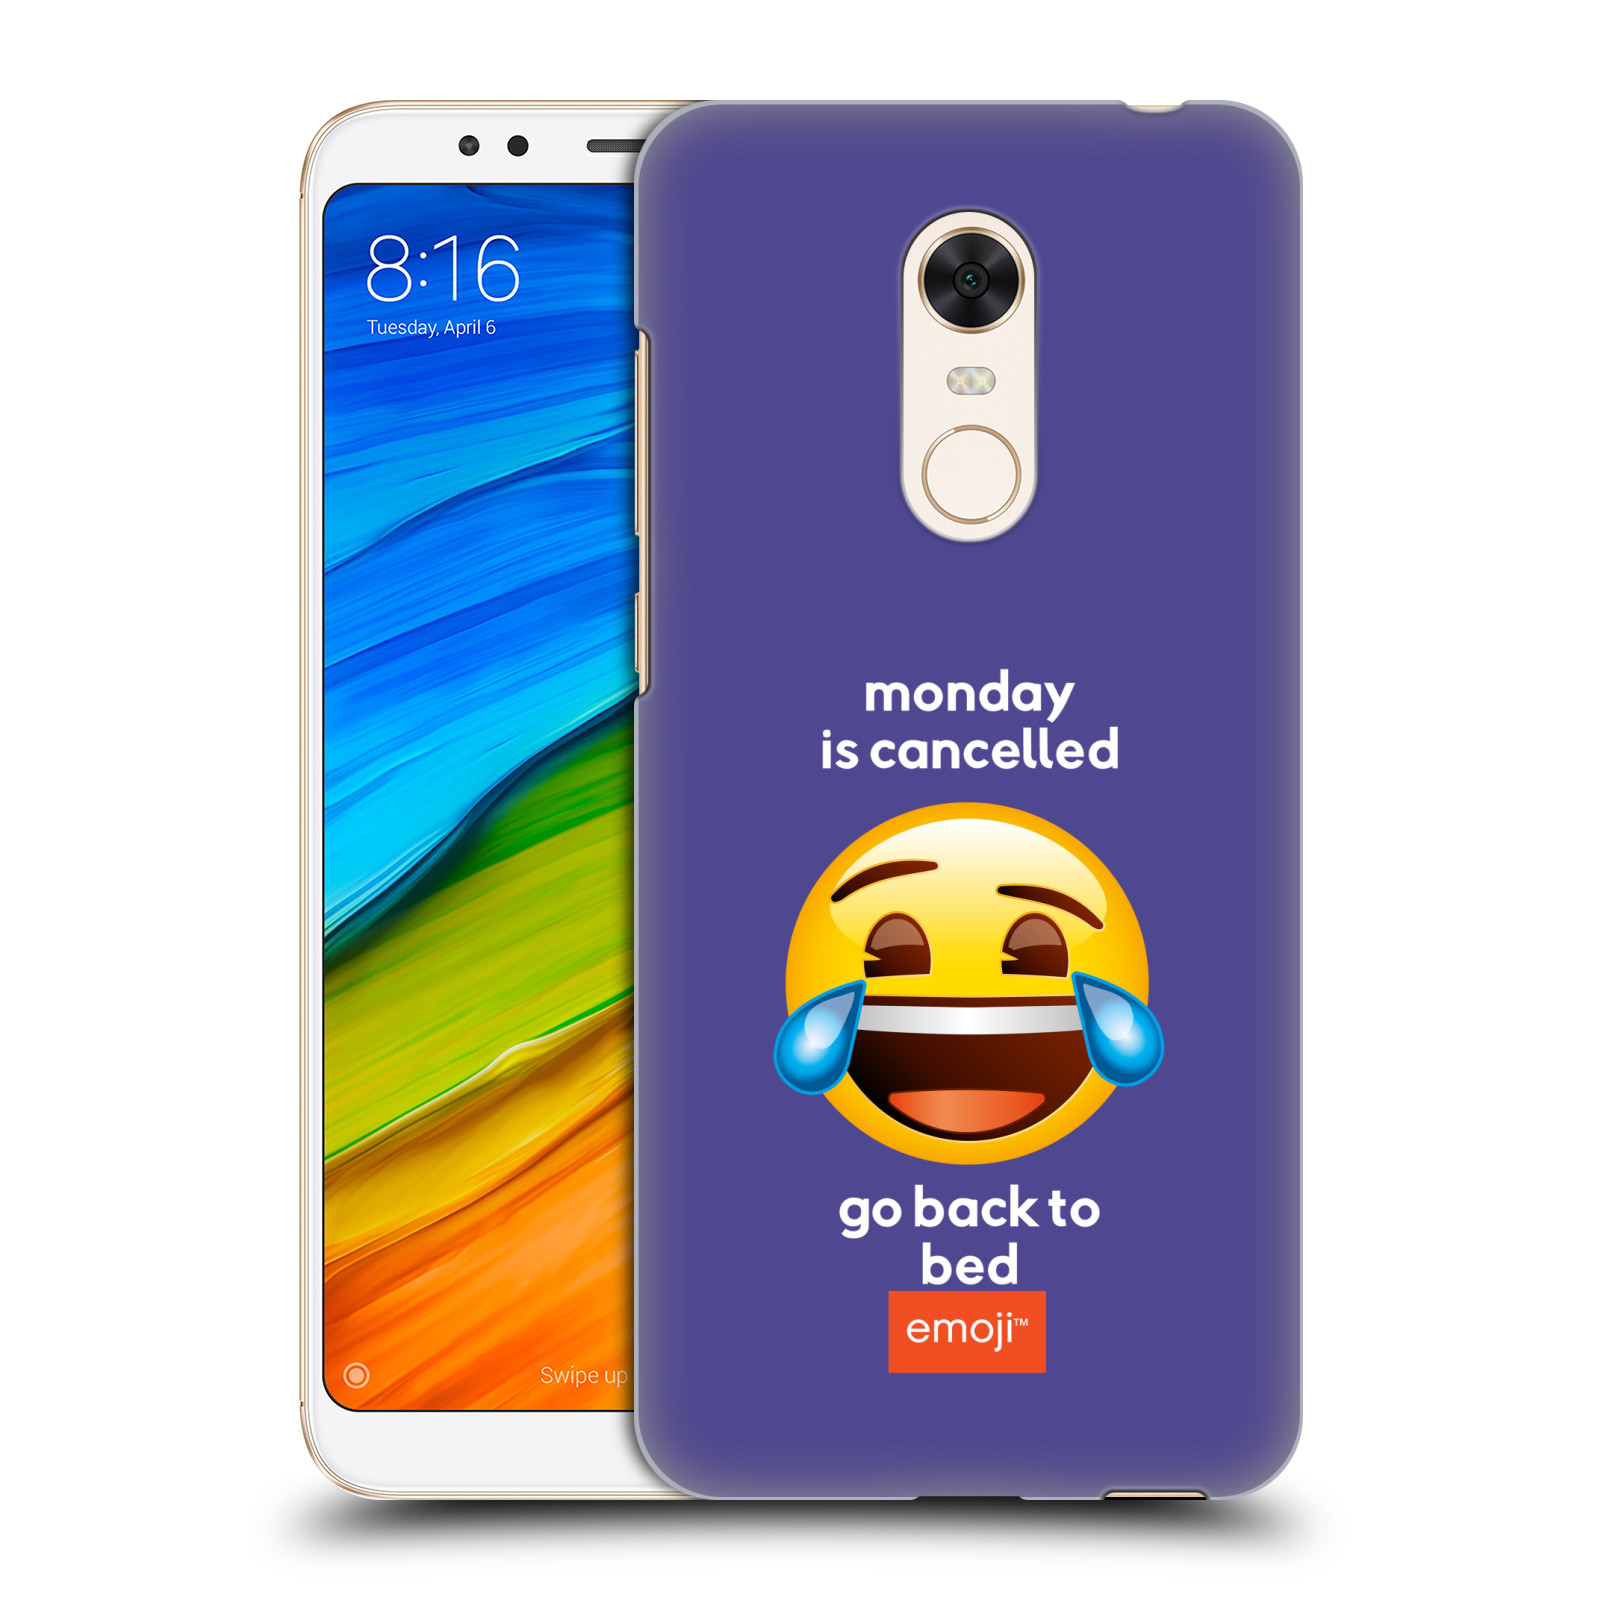 Pouzdro na mobil Xiaomi Redmi 5 PLUS (REDMI 5+) - HEAD CASE - Emoji smějící se smajlík pondělí